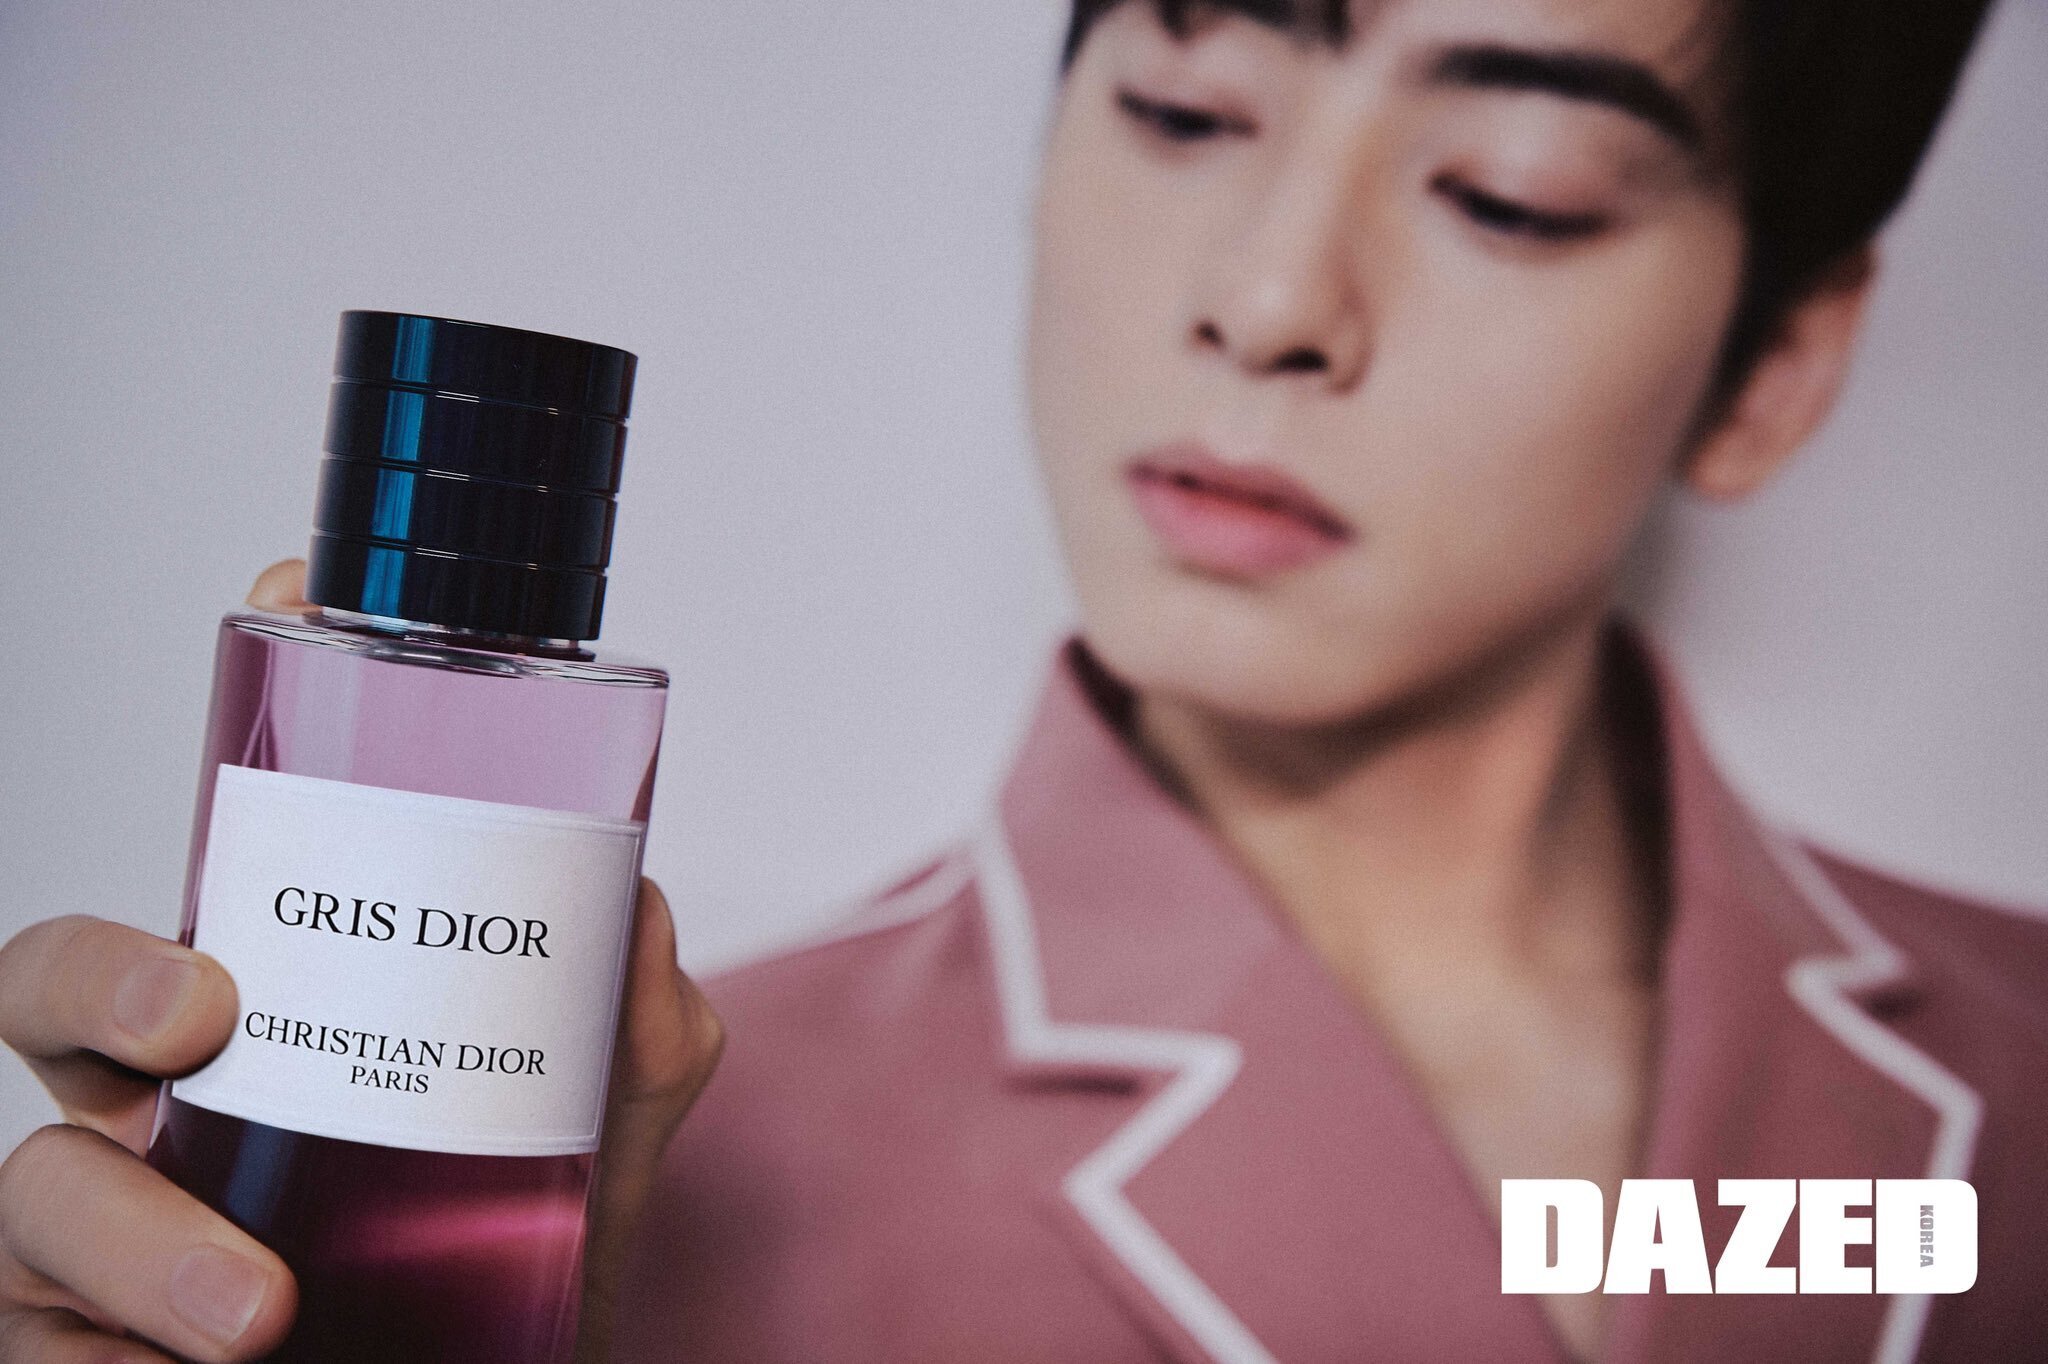 Cha Eunwoo x Gris Dior for Dazed Korea March 2023 #eunwoo #chaeunwoo #차은우